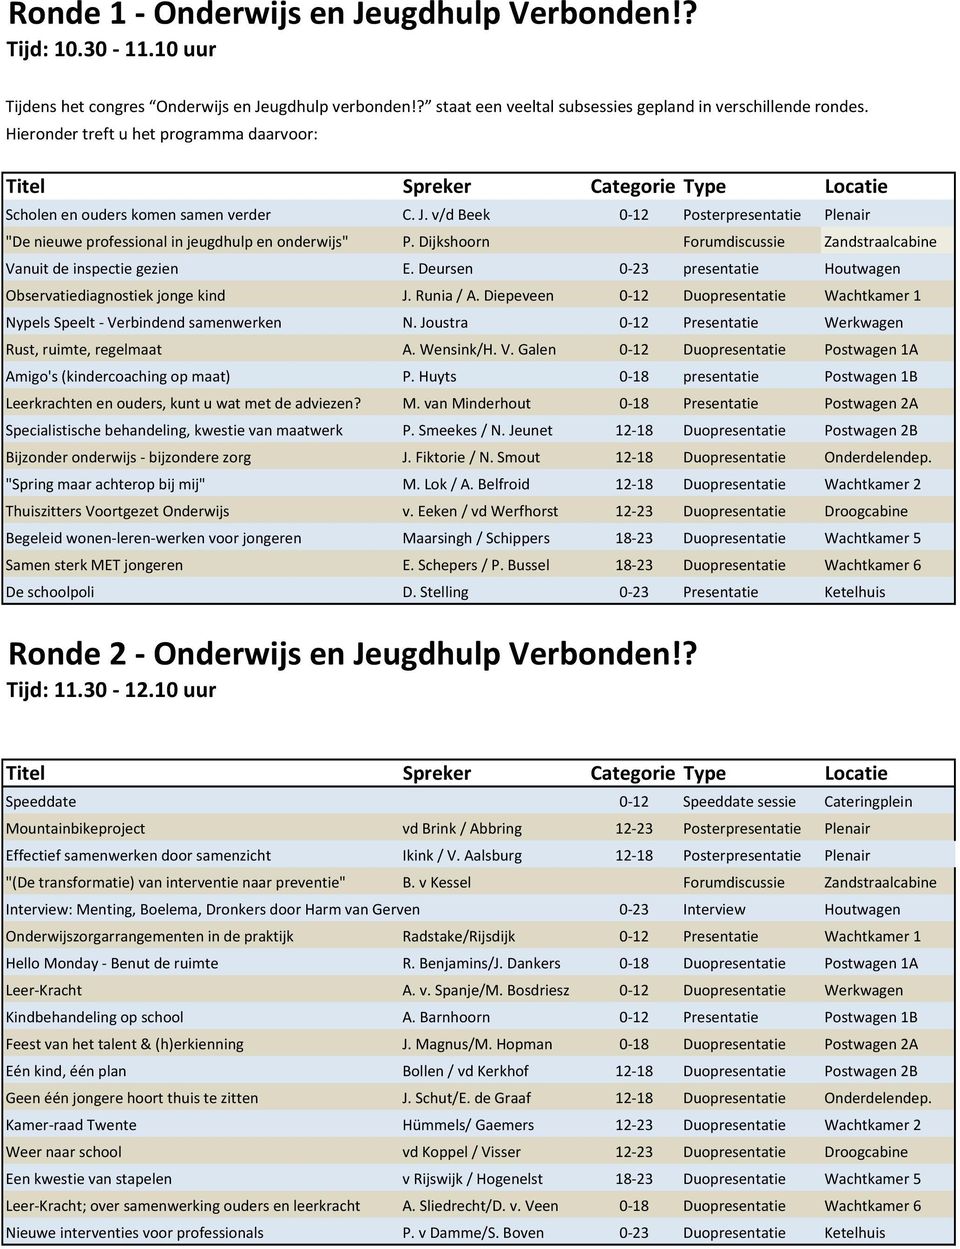 Dijkshoorn Forumdiscussie Zandstraalcabine Vanuit de inspectie gezien E. Deursen 0-23 presentatie Houtwagen Observatiediagnostiek jonge kind J. Runia / A.